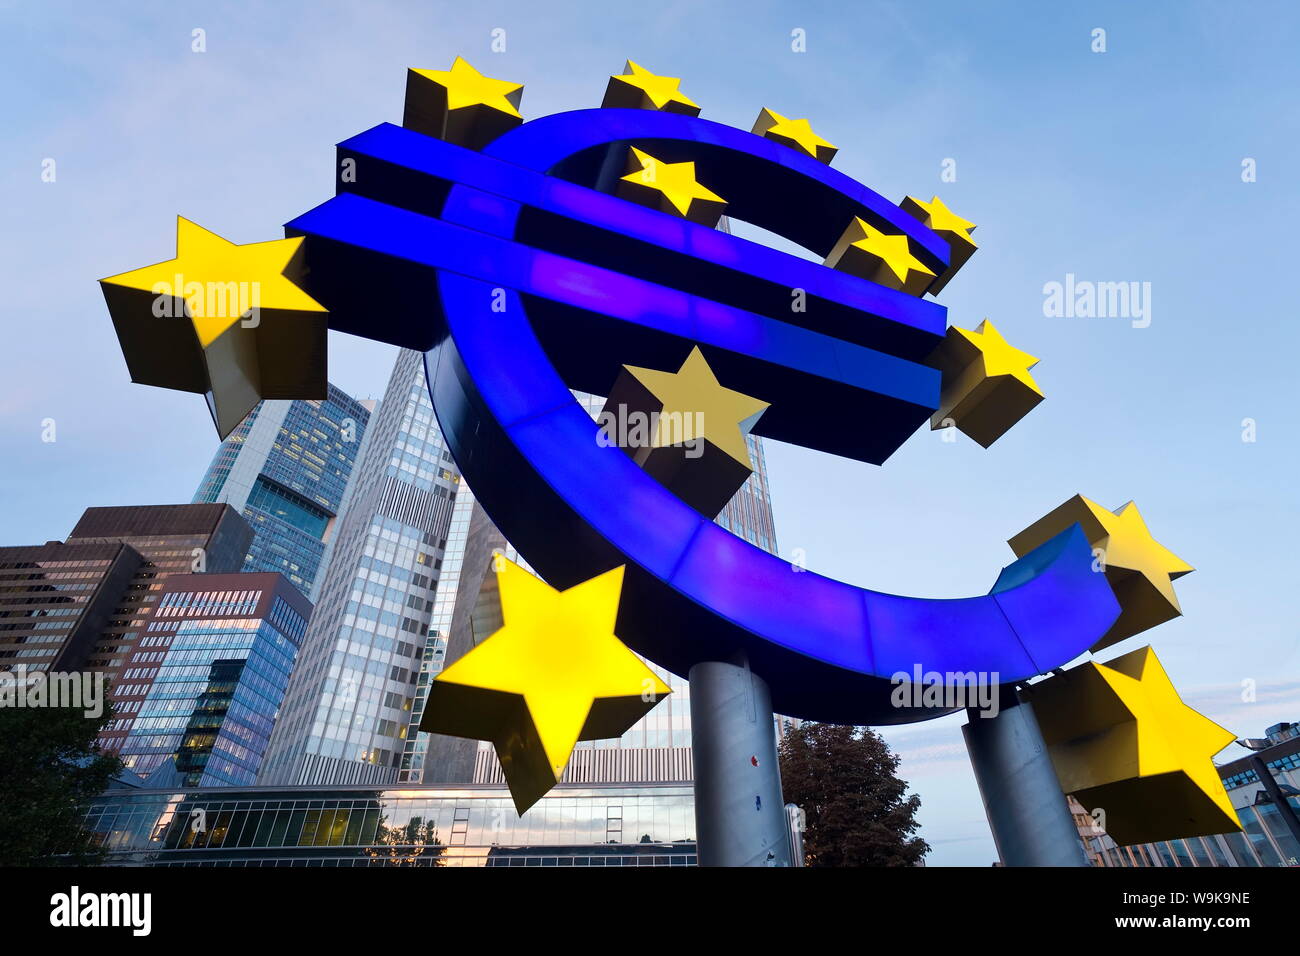 Banque centrale européenne et symbole de l'Euro, Willy Brandt Platz, Frankfurt-am-Main, Hesse, Germany, Europe Banque D'Images